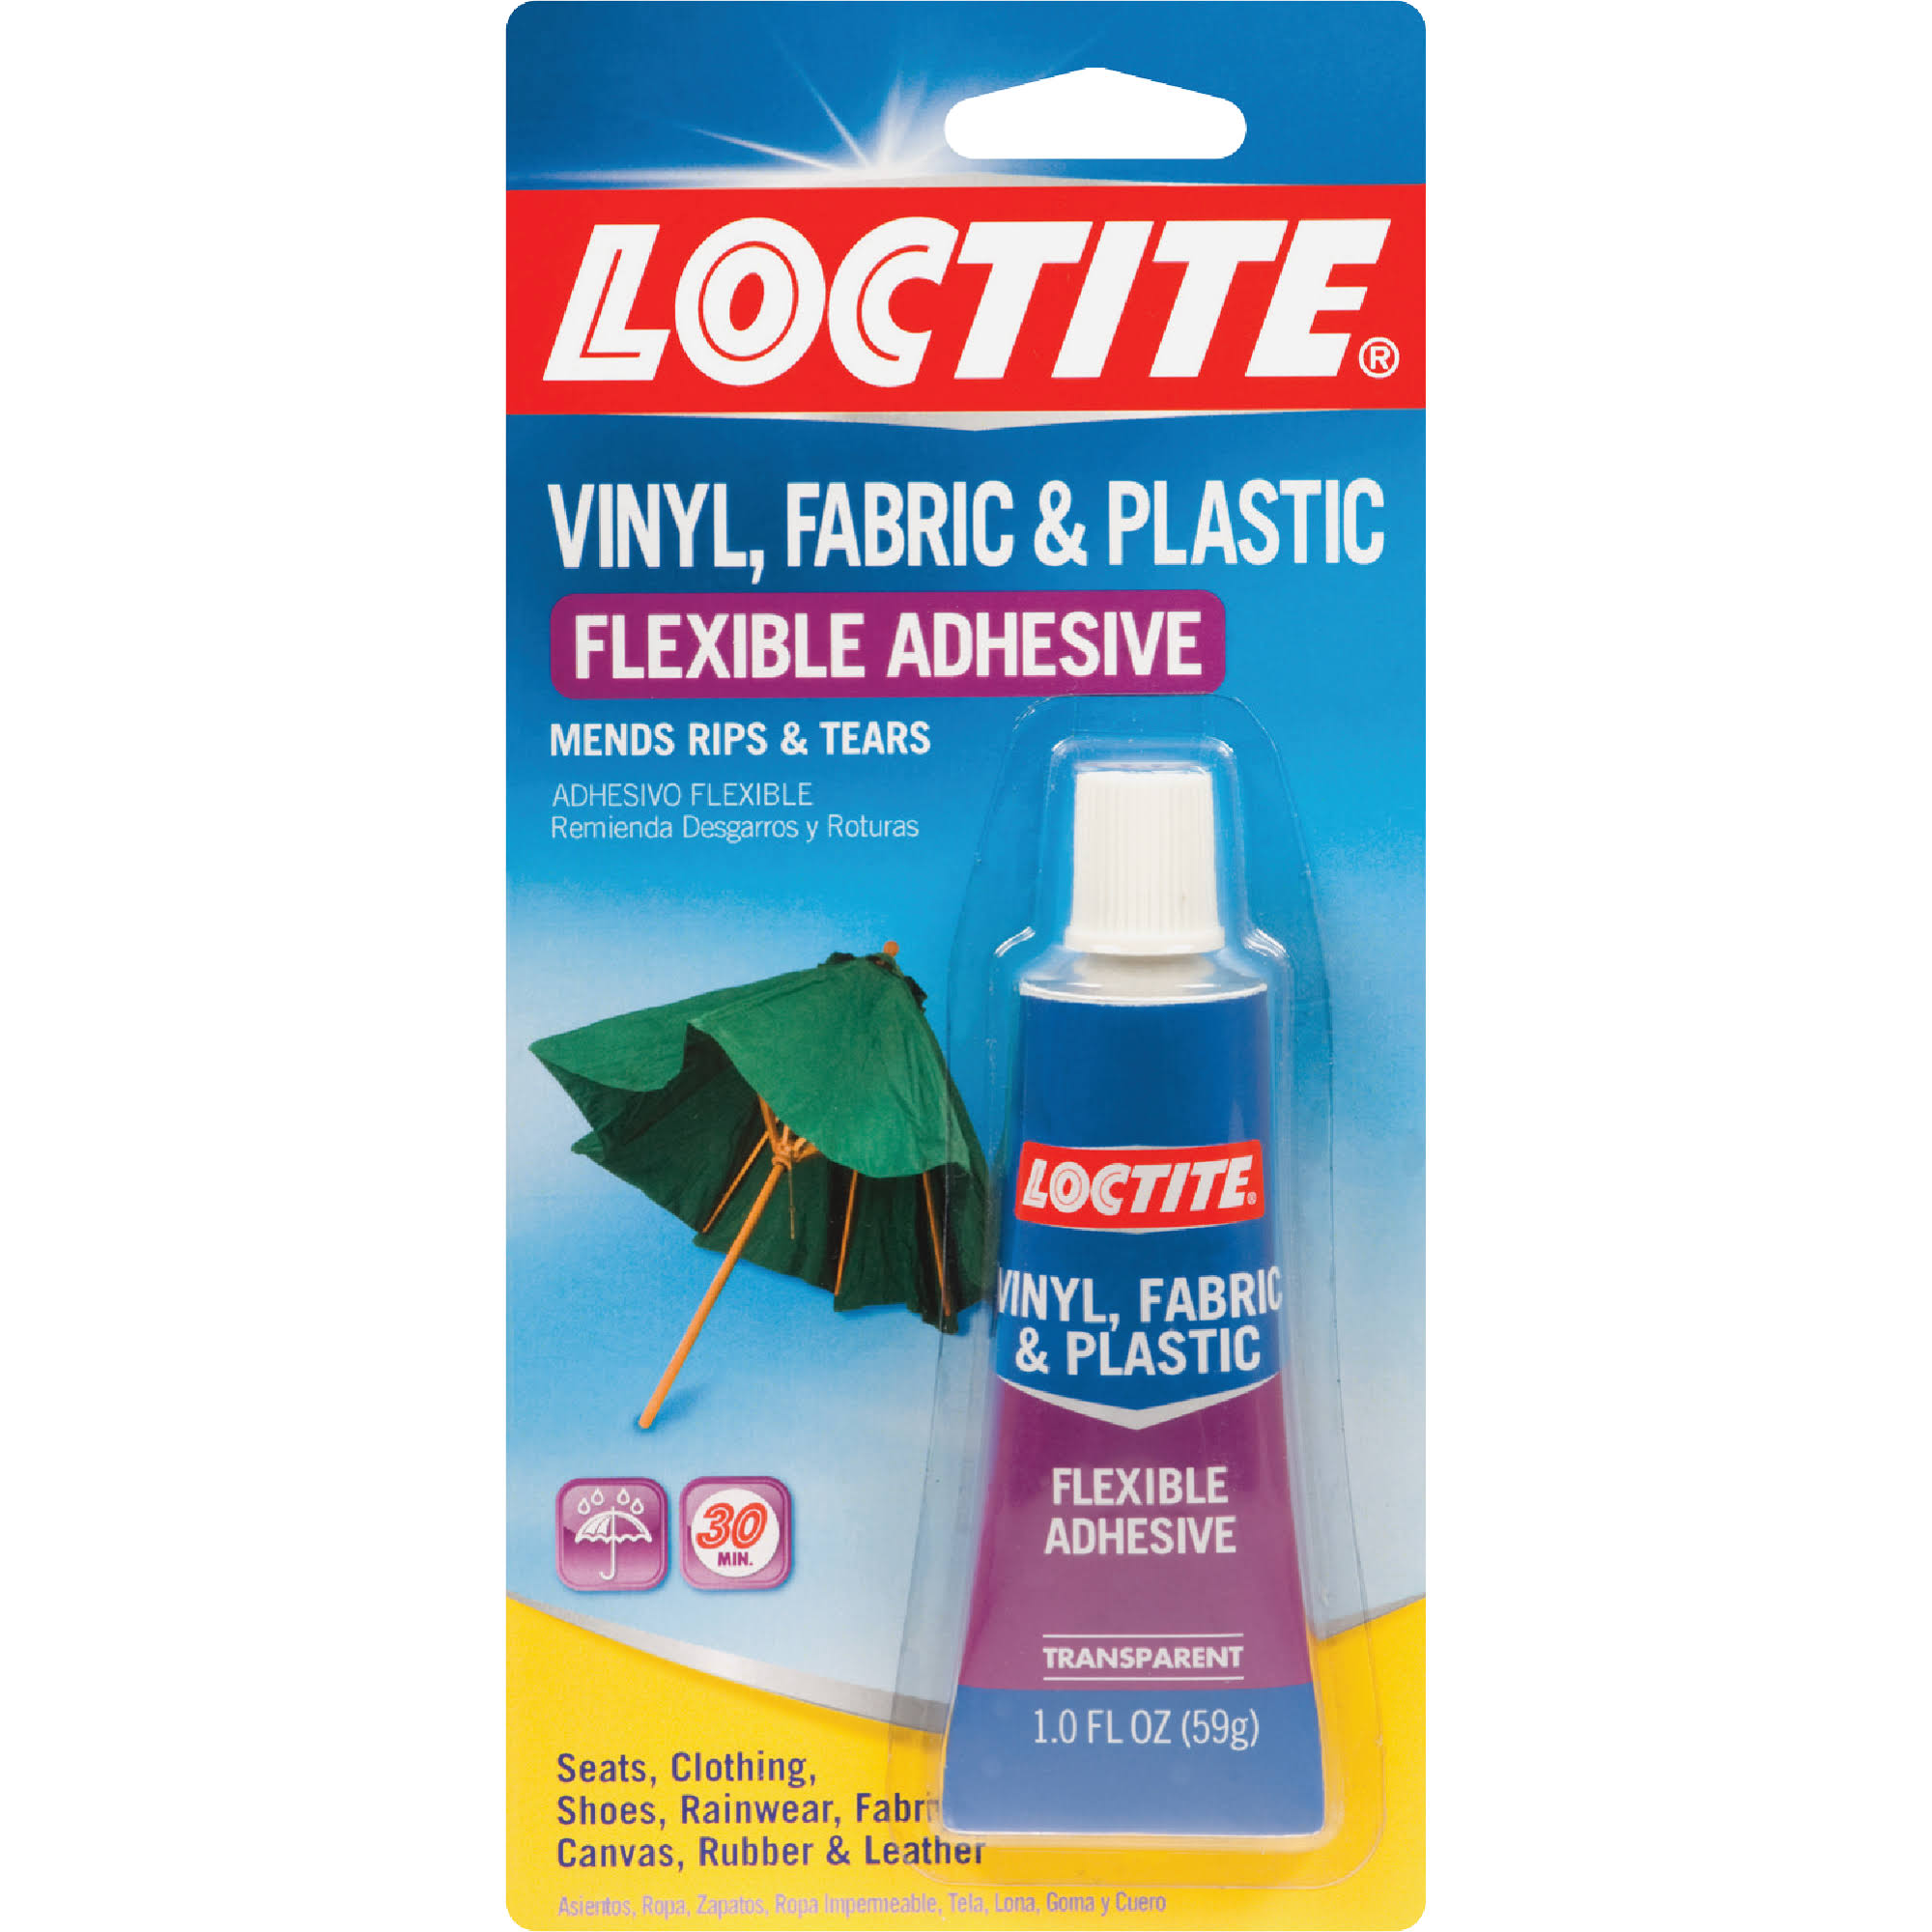 Loctite Vinyl, Fabric & Plastic Flexible Adhesive - 59g